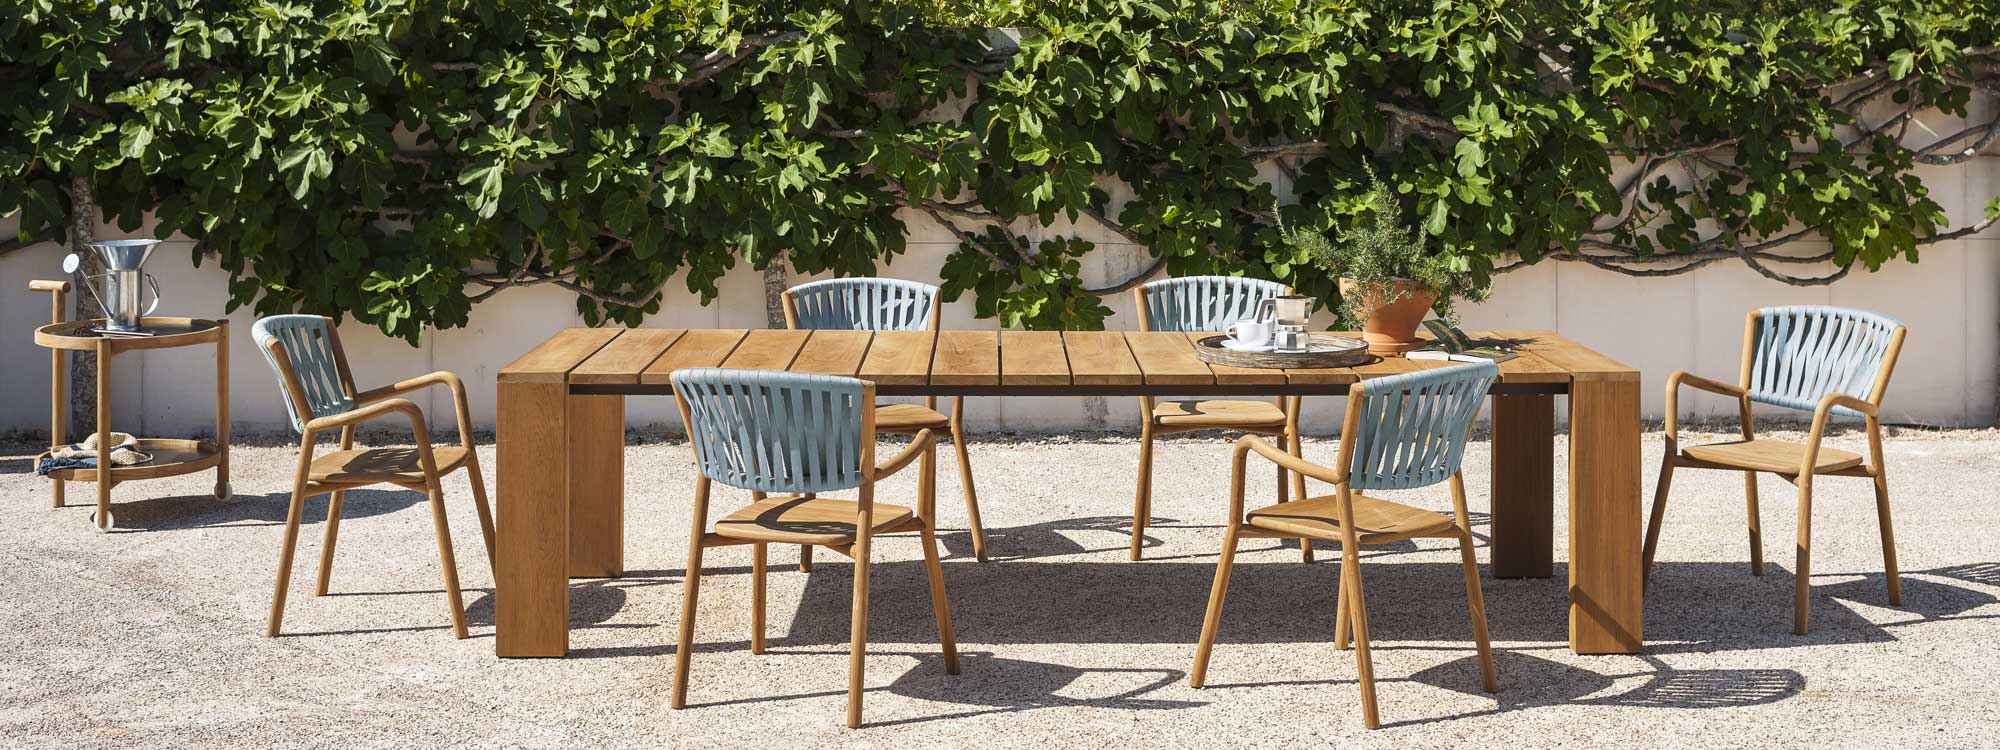 Piper Teak garden chair & modern garden dining chair by Rodolfo Dordoni in high quality outdoor furniture materials by Roda garden furniture